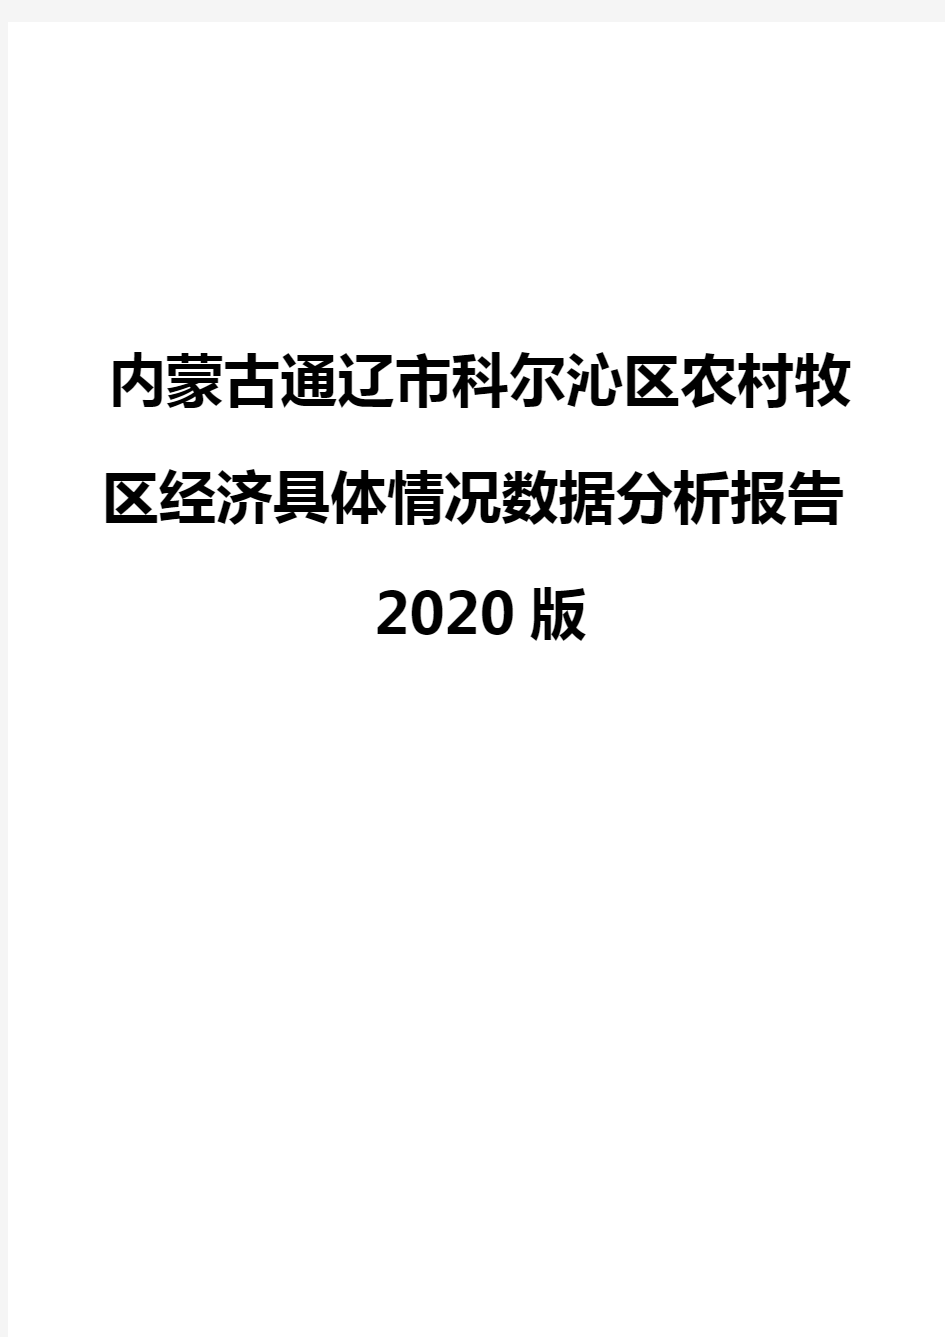 内蒙古通辽市科尔沁区农村牧区经济具体情况数据分析报告2020版